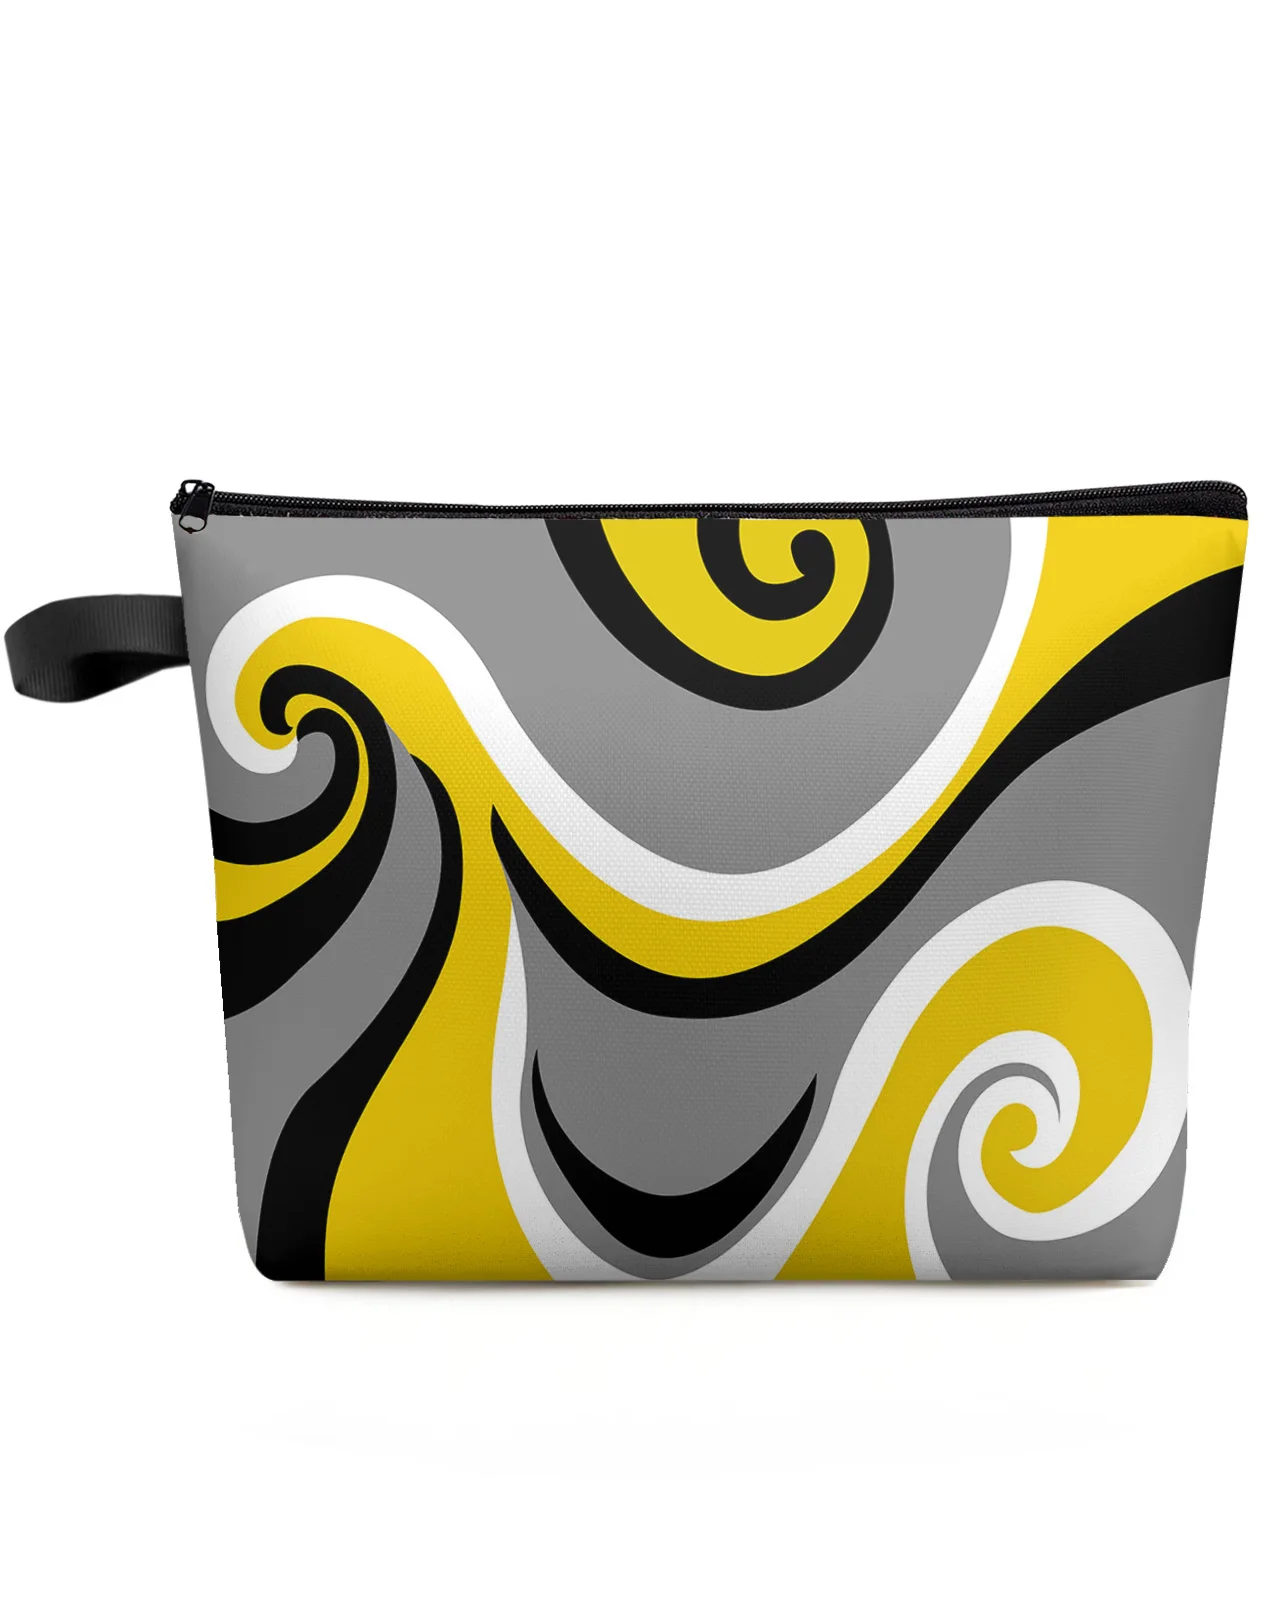 Современная абстрактная Желтая косметичка Whirlpool, сумка для предметов первой необходимости, женские косметички, органайзер для хранения в туалете, пенал для карандашей Изображение 0